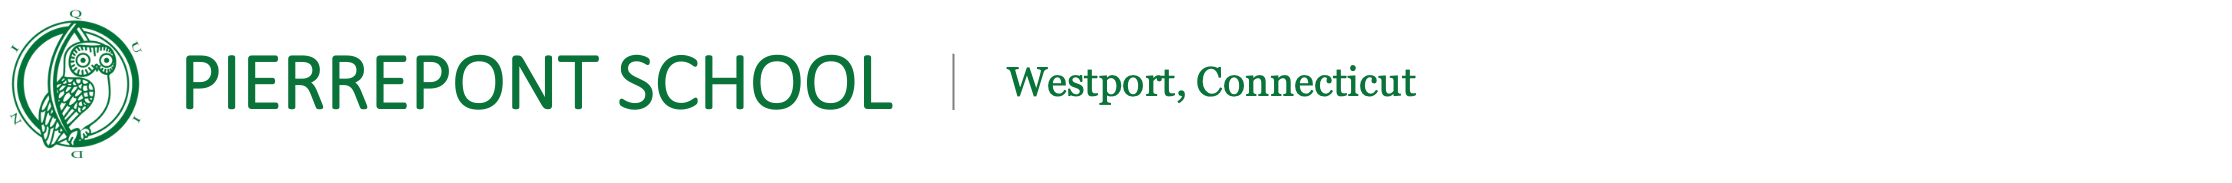 Pierrepont School | Westport, Connecticut